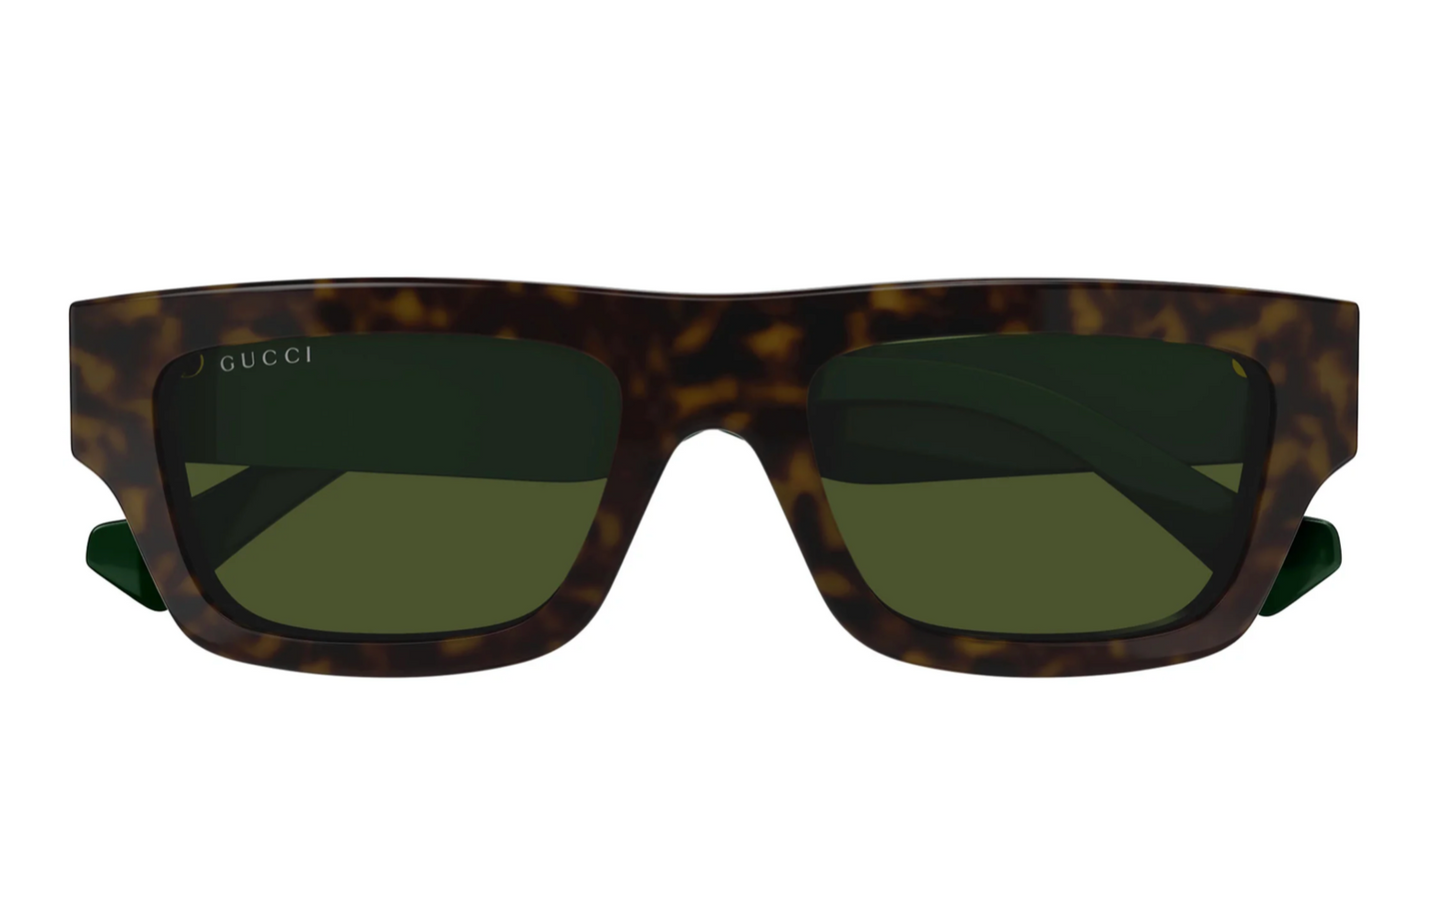 Gucci GG1301S-002 55mm New Sunglasses